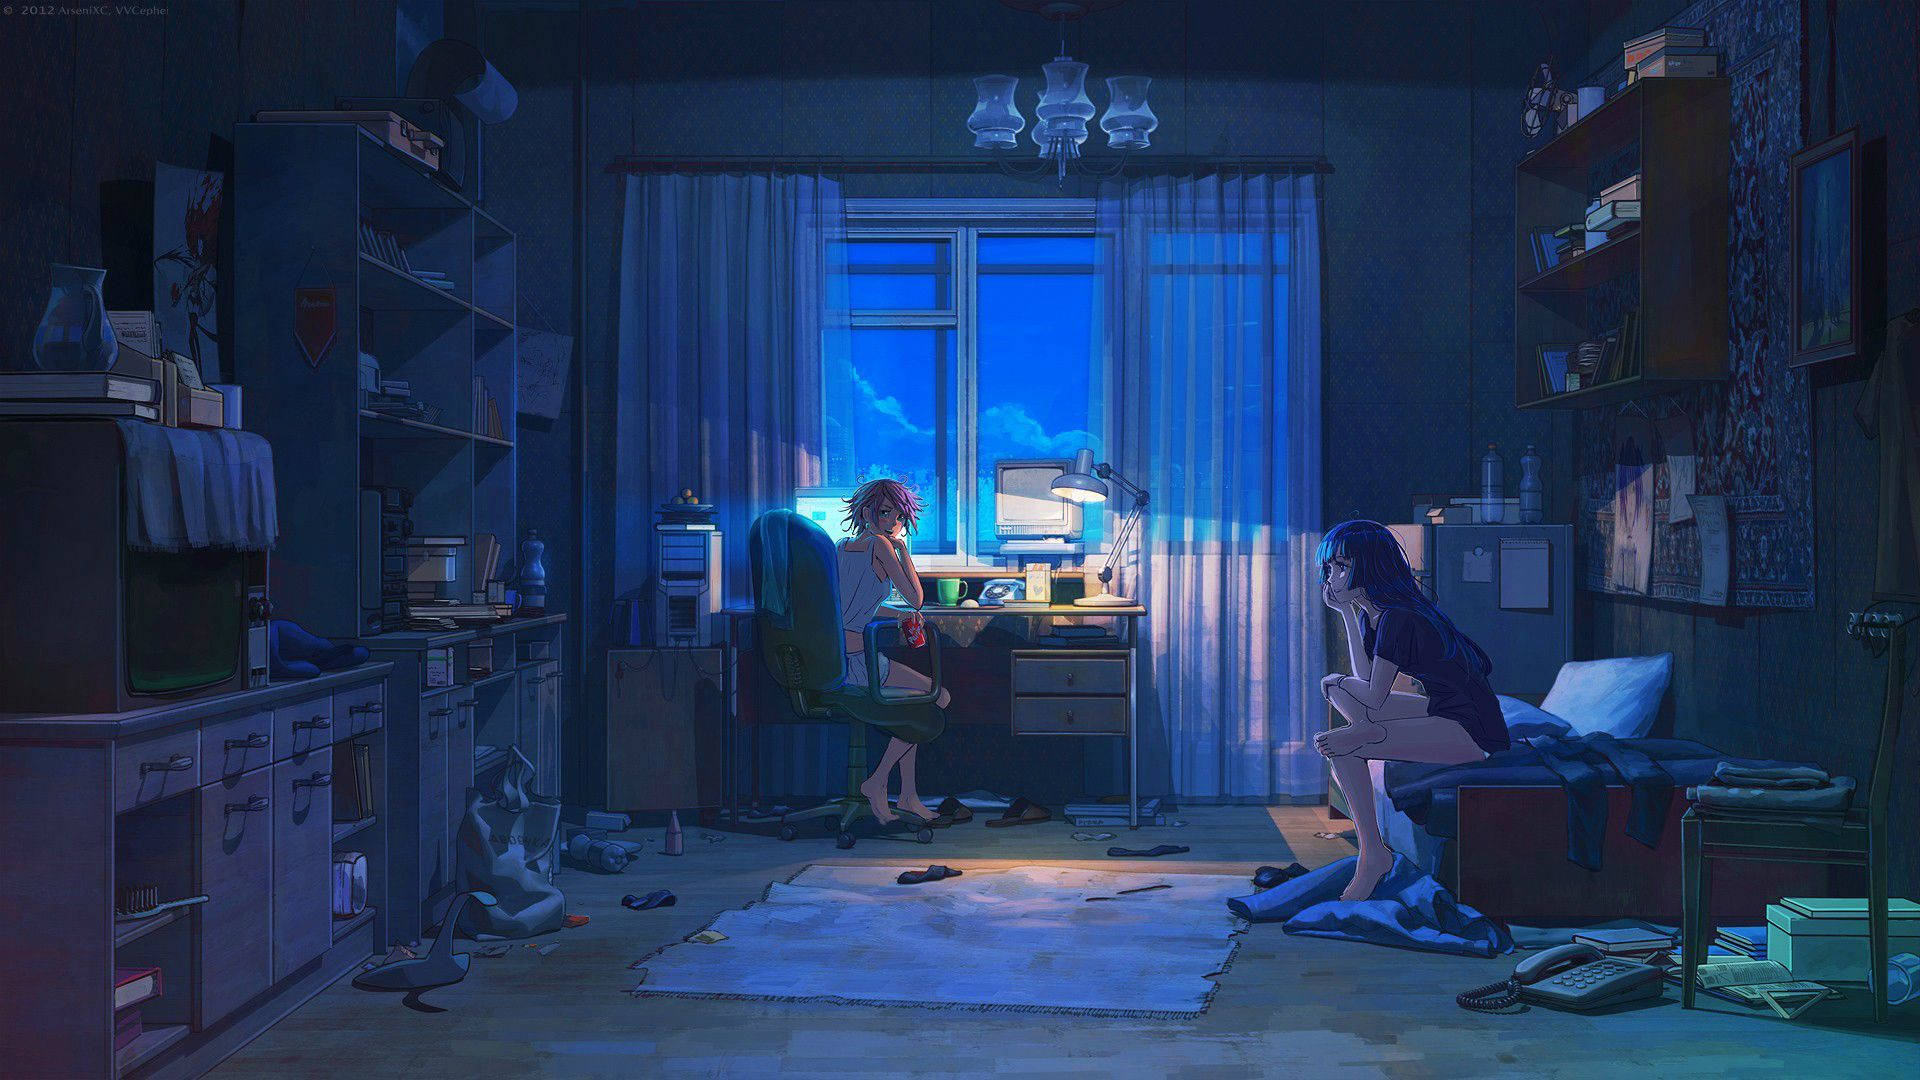 Chicasde Anime Tristes Con Una Estética De Habitación Sucia. Fondo de pantalla